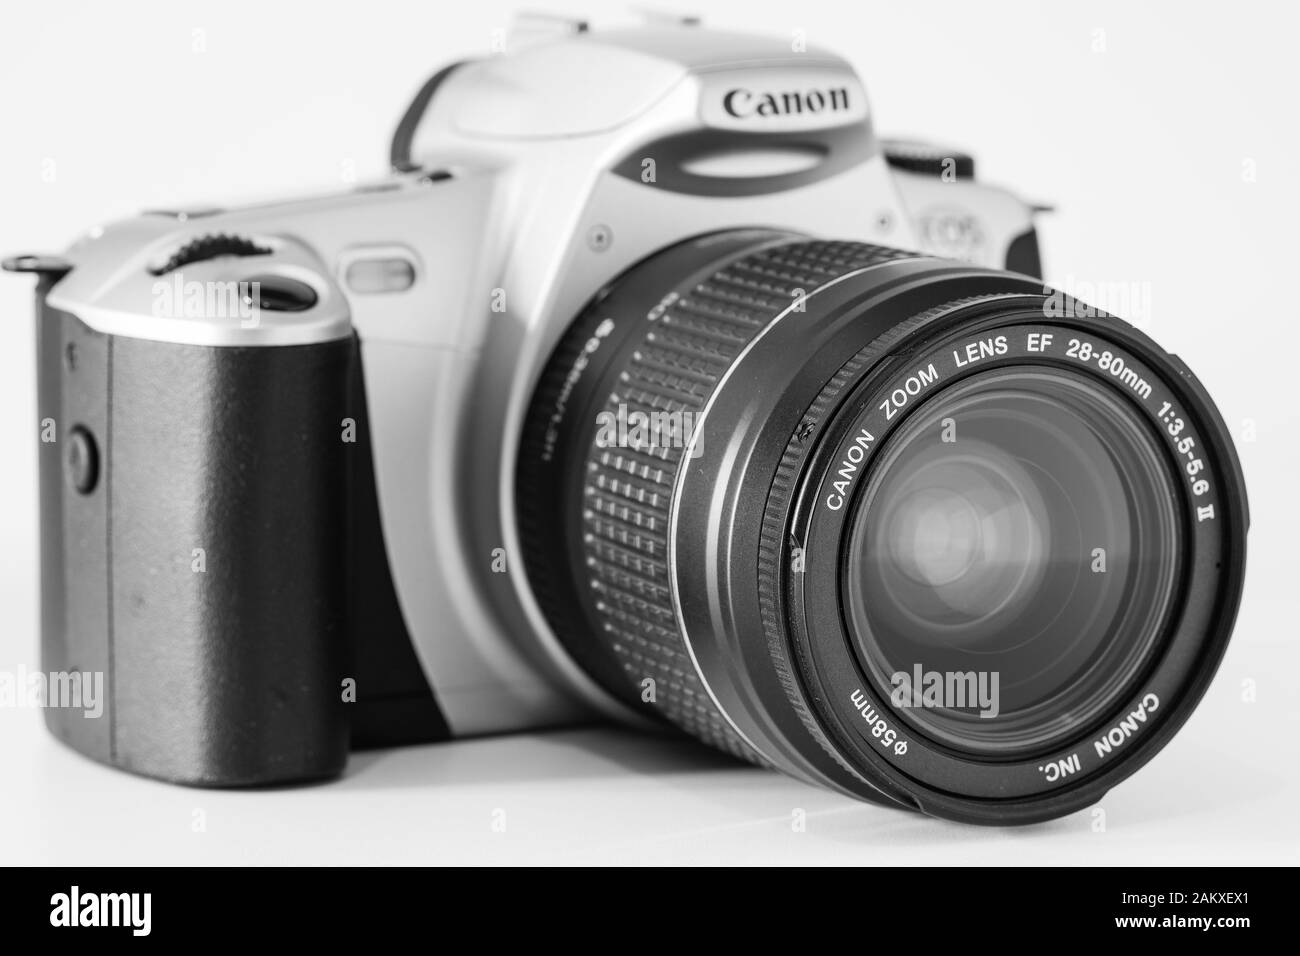 Vista frontal de una cámara Eos 300 de Canon con el objetivo insertado de 28 80 mm, sistema analógico, imagen en blanco y negro. Foto de stock